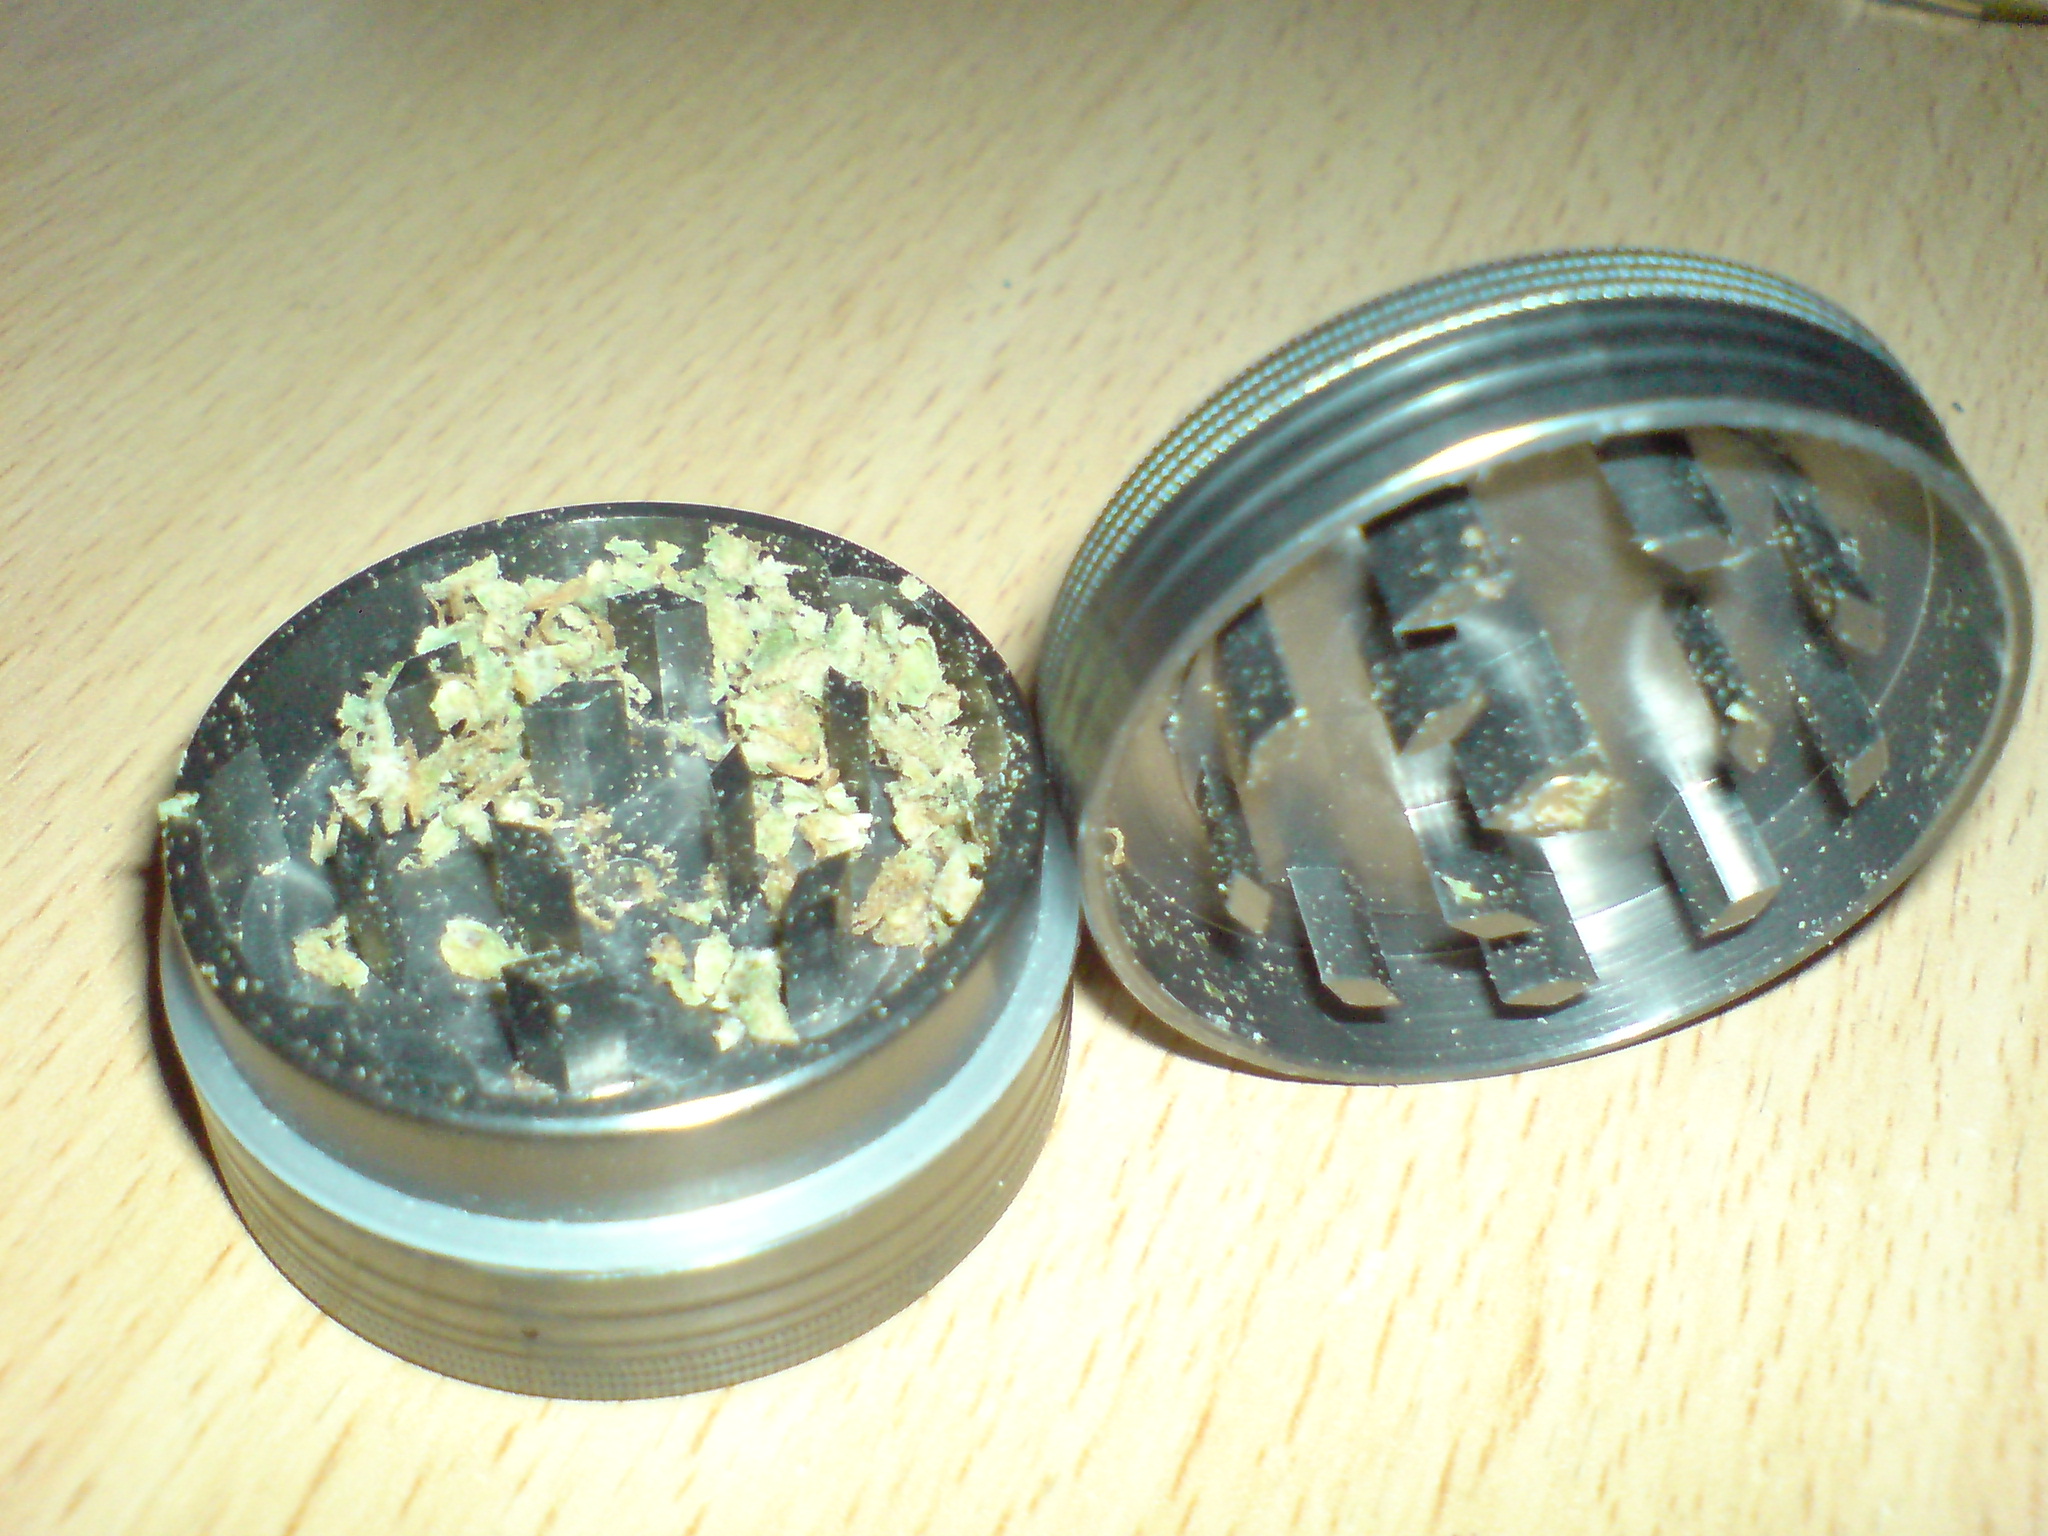 eletric weed grinder